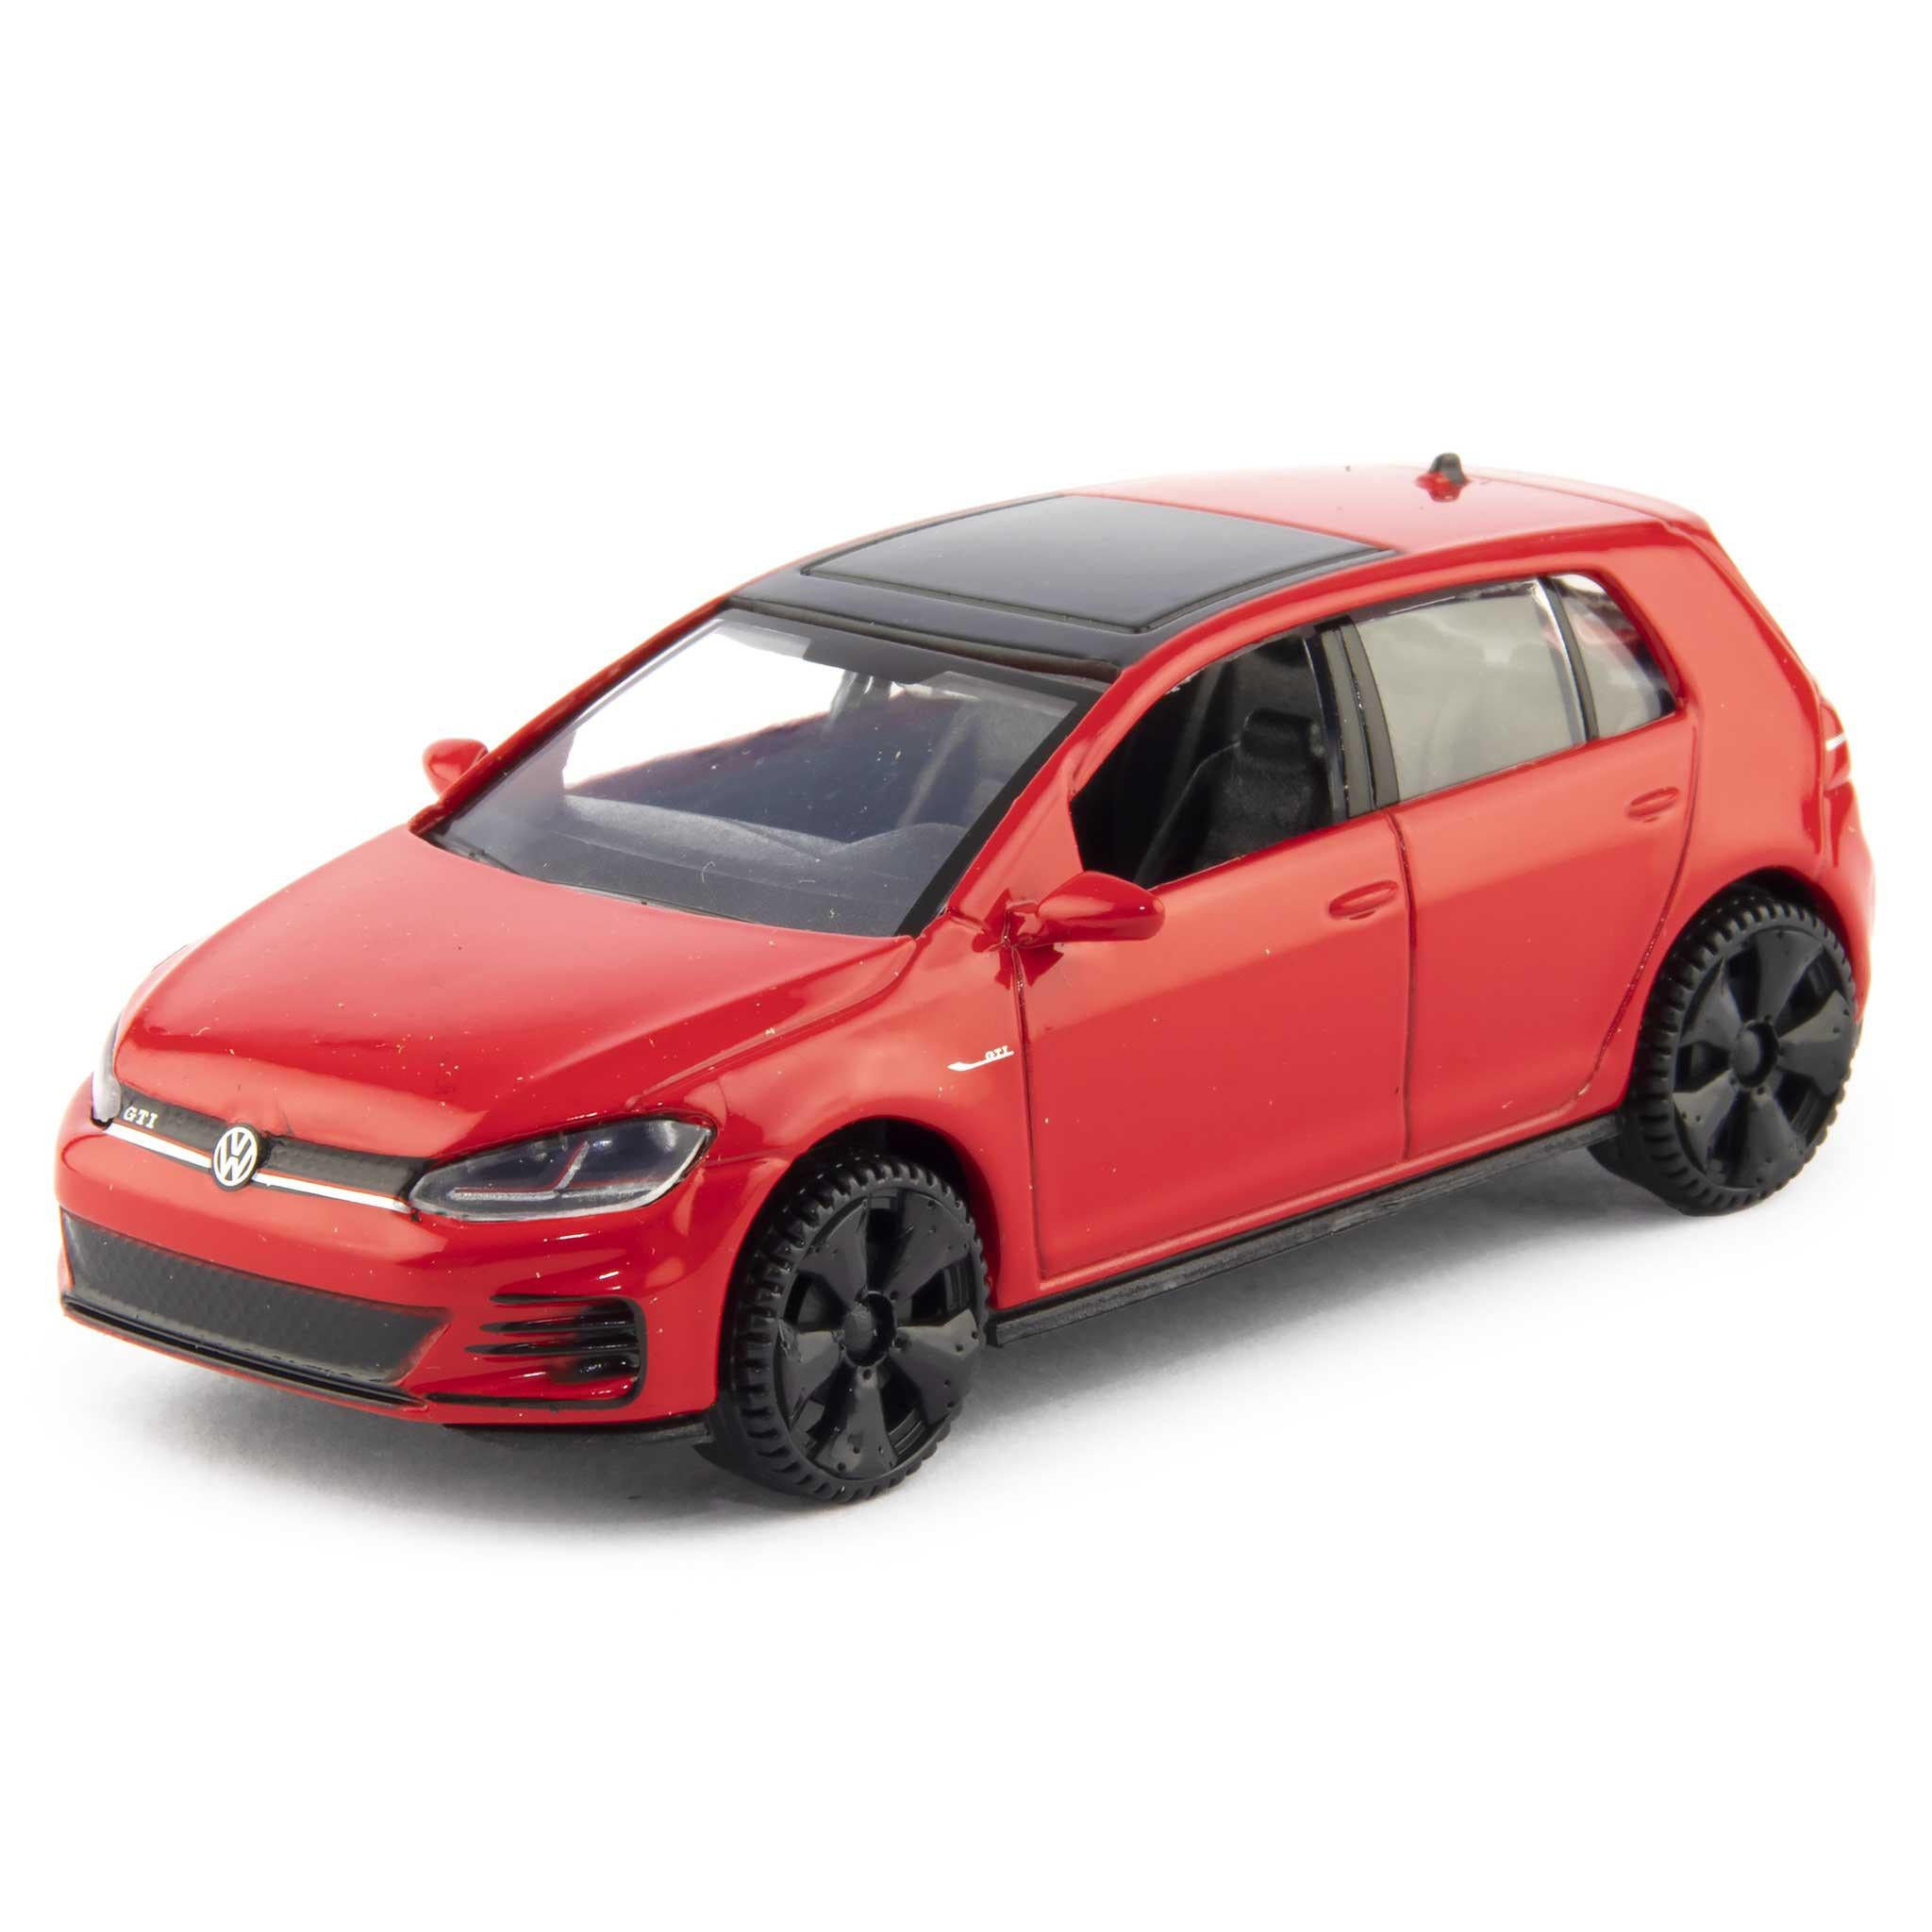 Volkswagen Golf GTi Diecast Toy Car red - 1:43 Scale